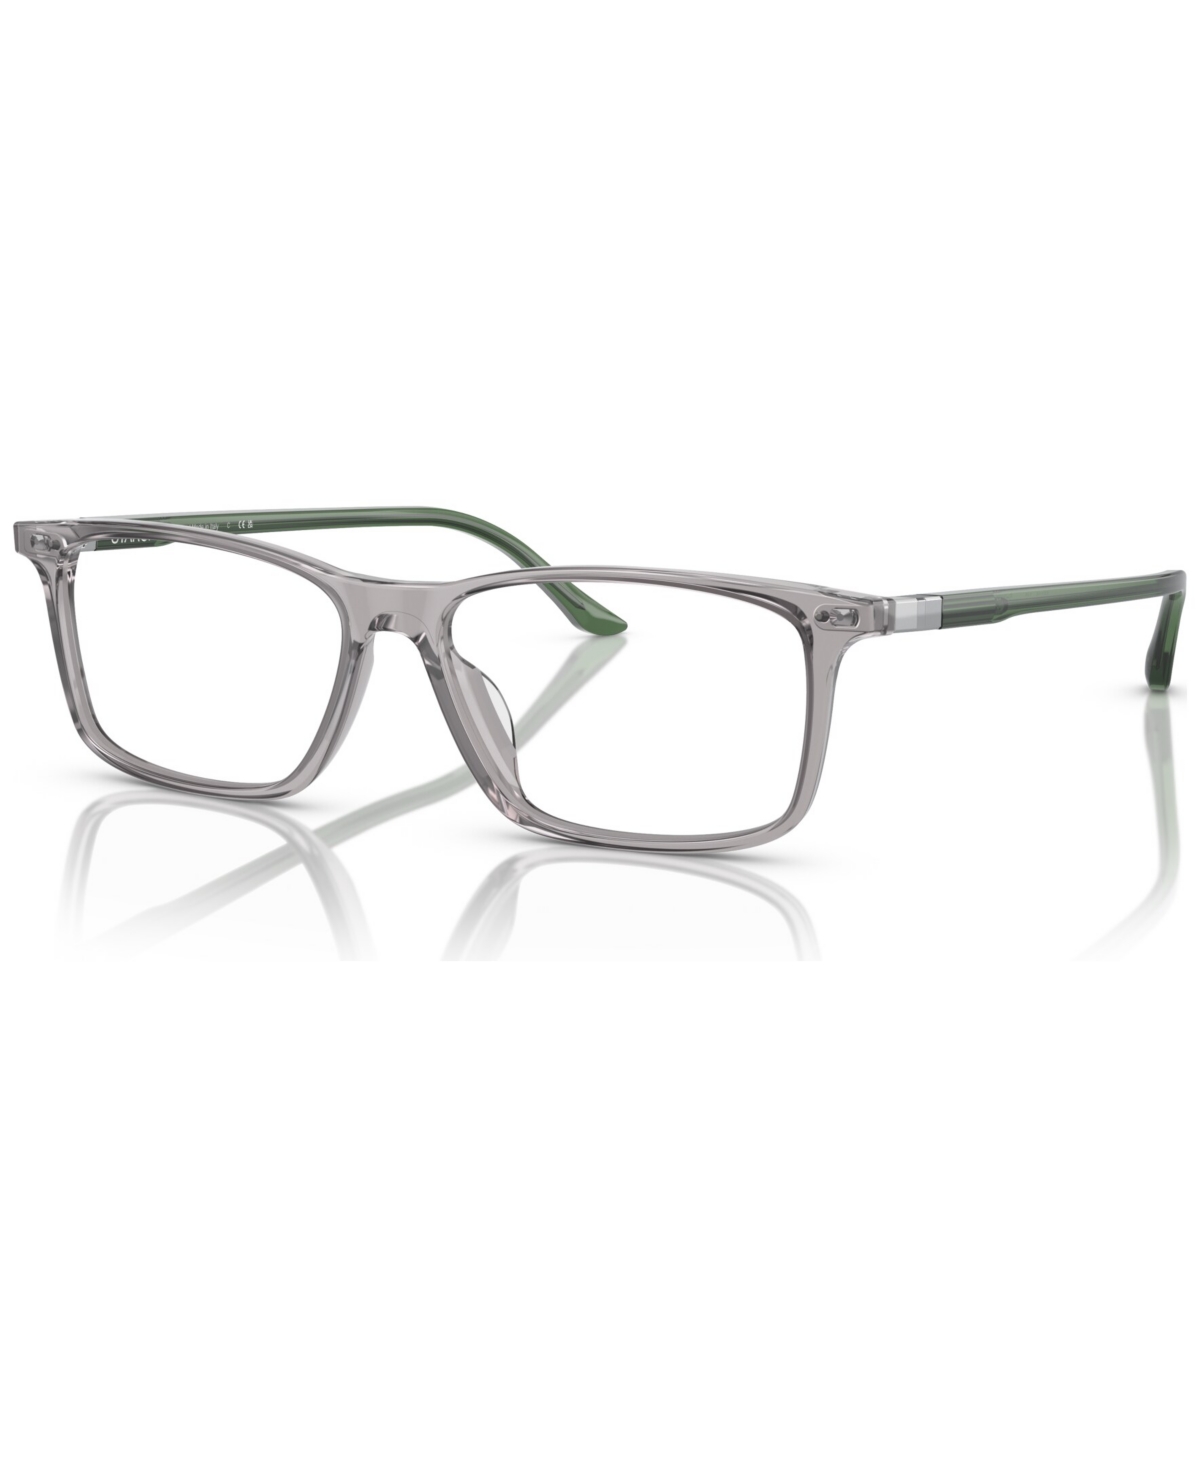 Men's Eyeglasses, SH3078 55 - Gray